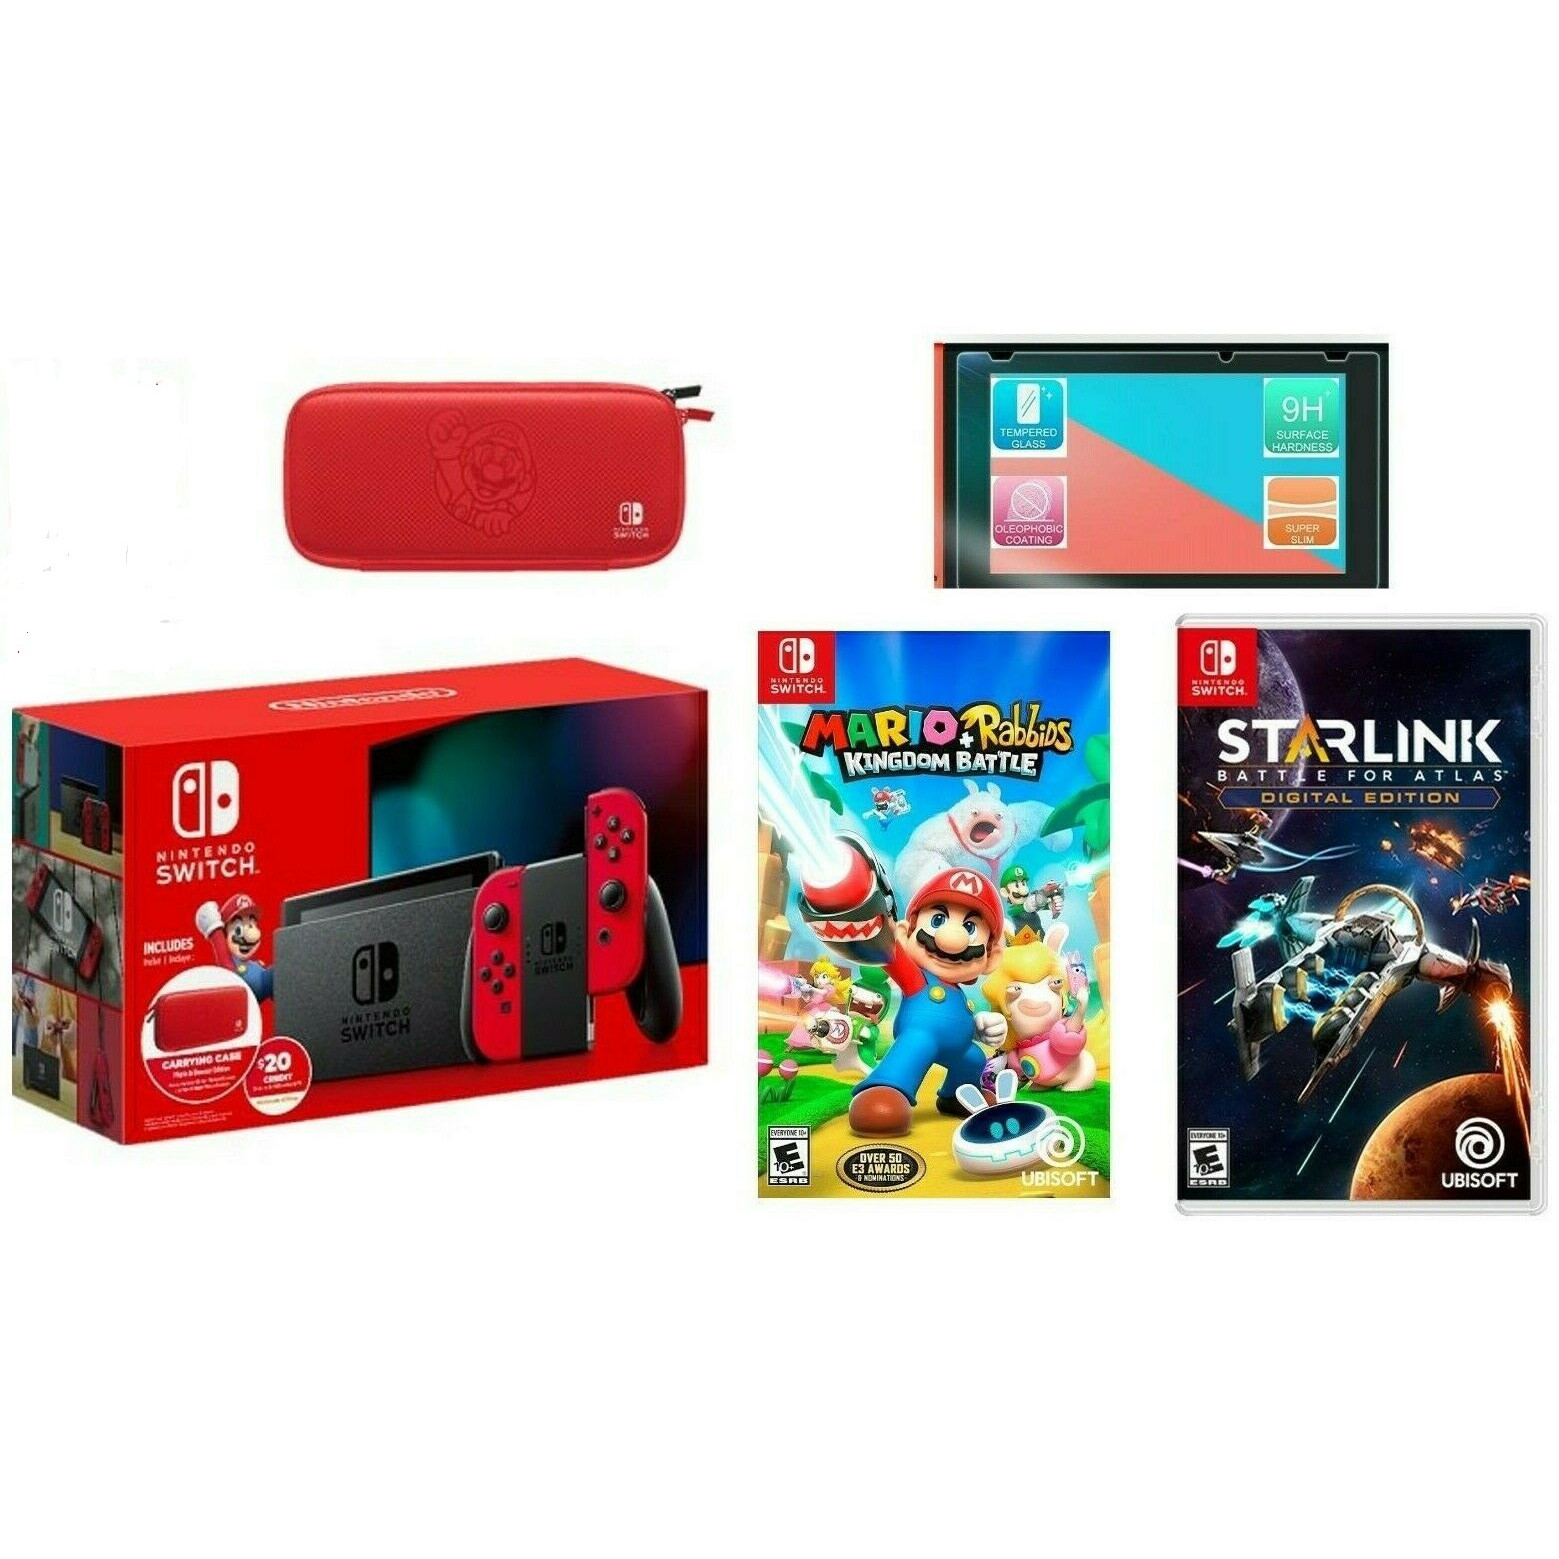 Bộ Máy Chơi Game Nintendo Switch Bundle Mario Kèm 2 Game Rabbids Kingdom Battle + Starlink - new model 2019- hàng nhập khẩu